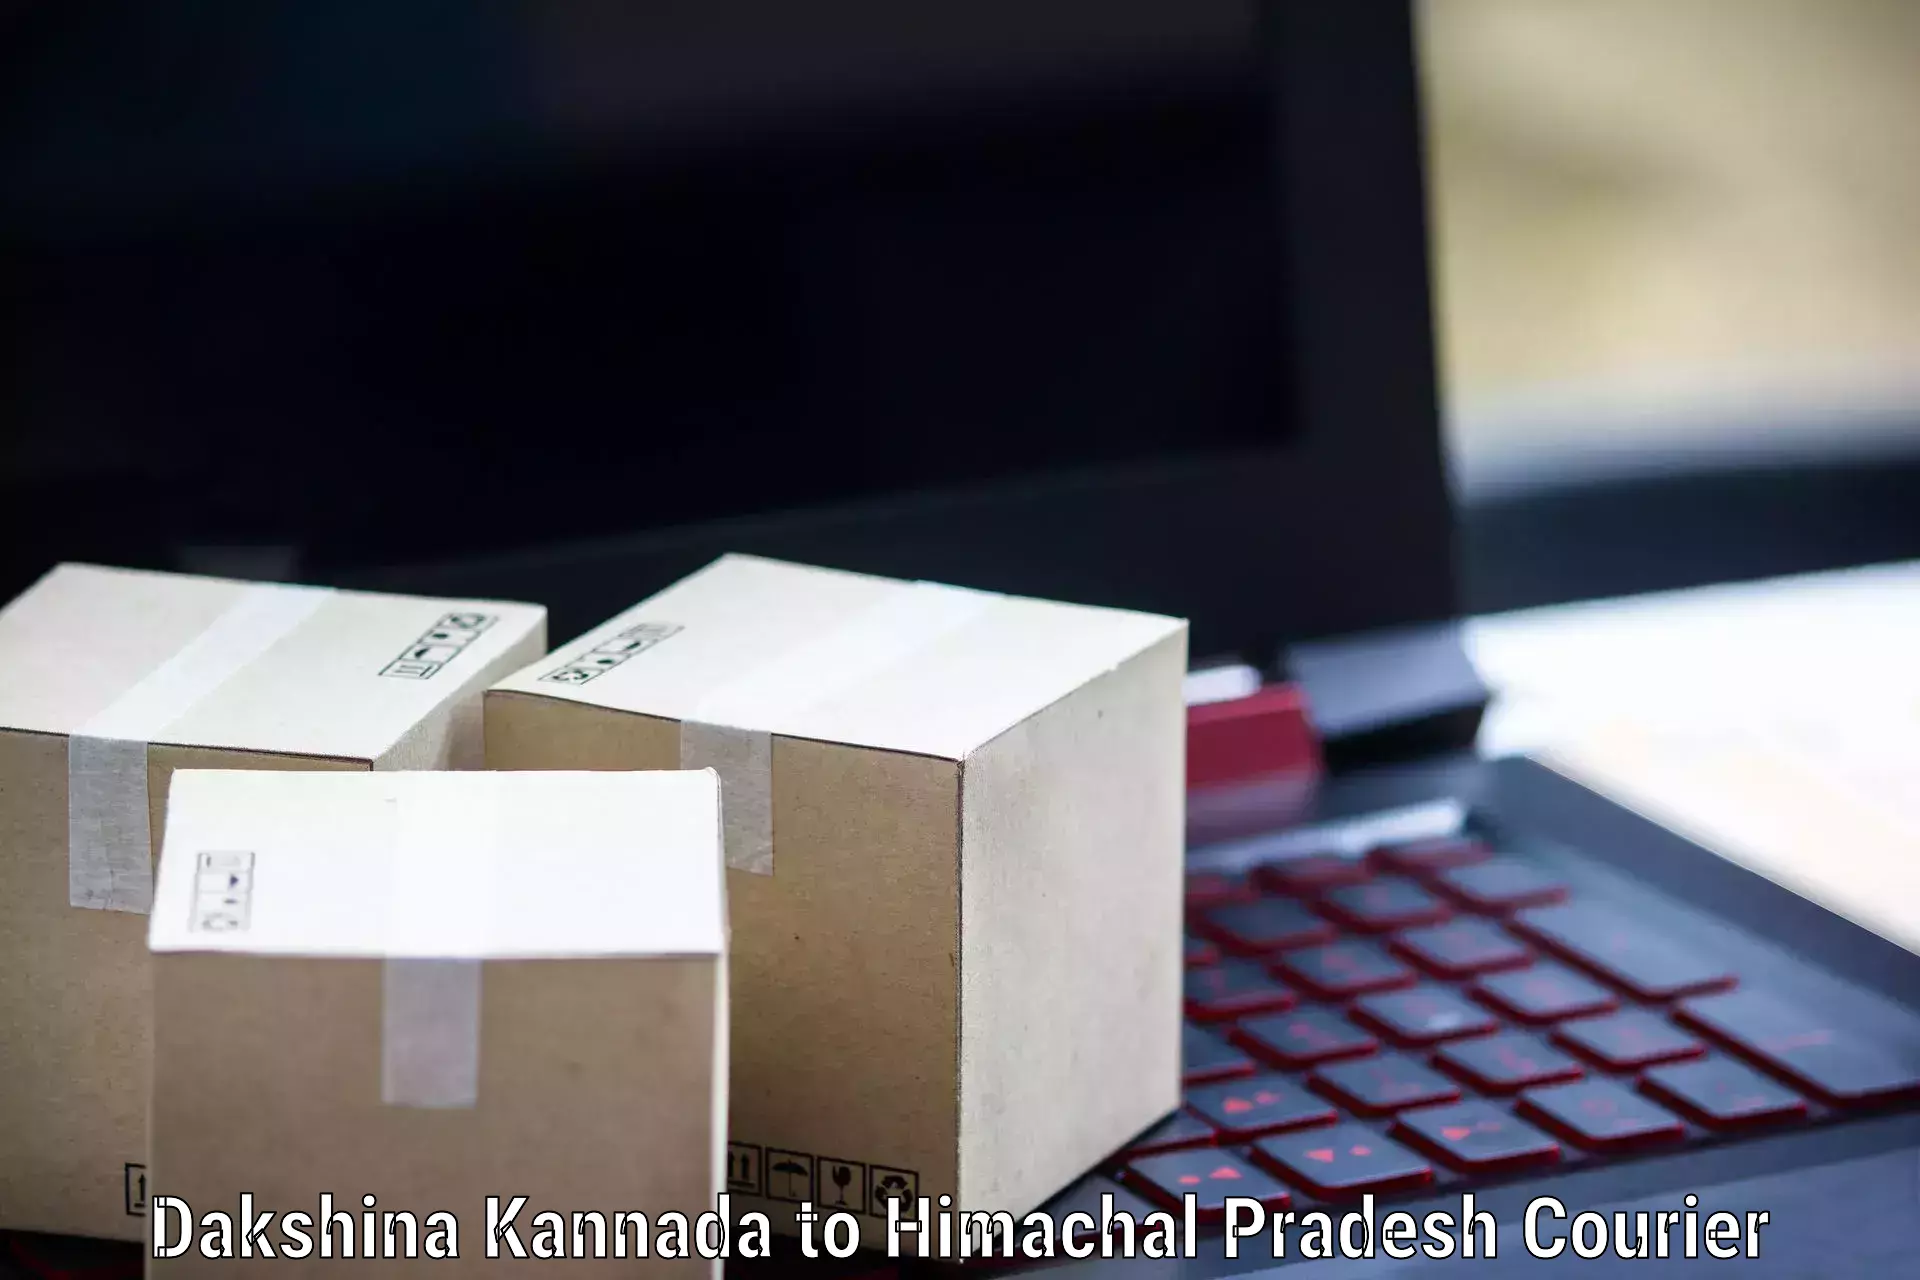 High-efficiency logistics Dakshina Kannada to Dheera